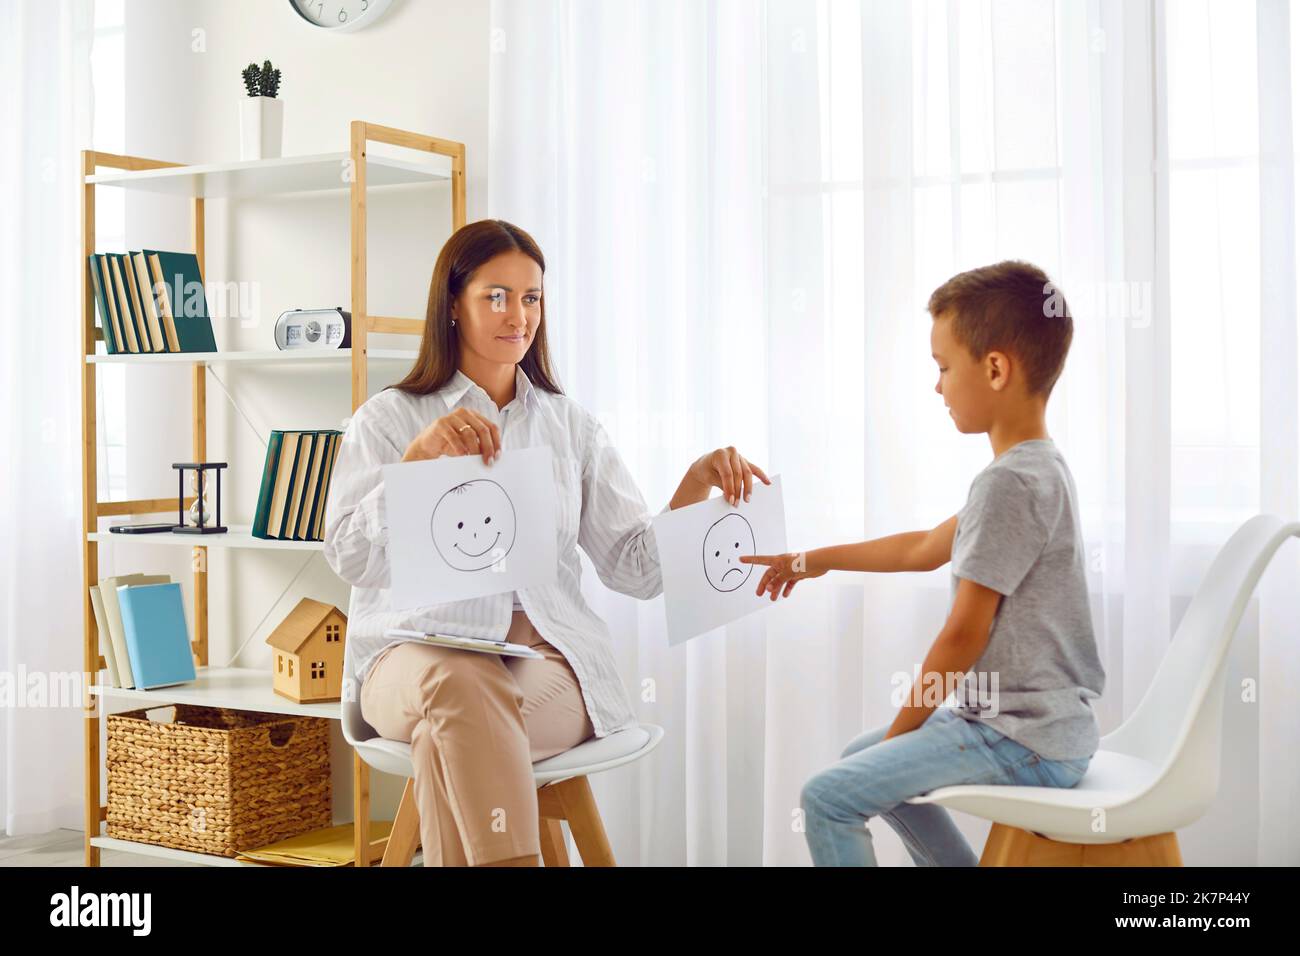 Psychologue ou thérapeute utilise emoji tout en parlant avec l'enfant d'école au sujet des émotions Banque D'Images